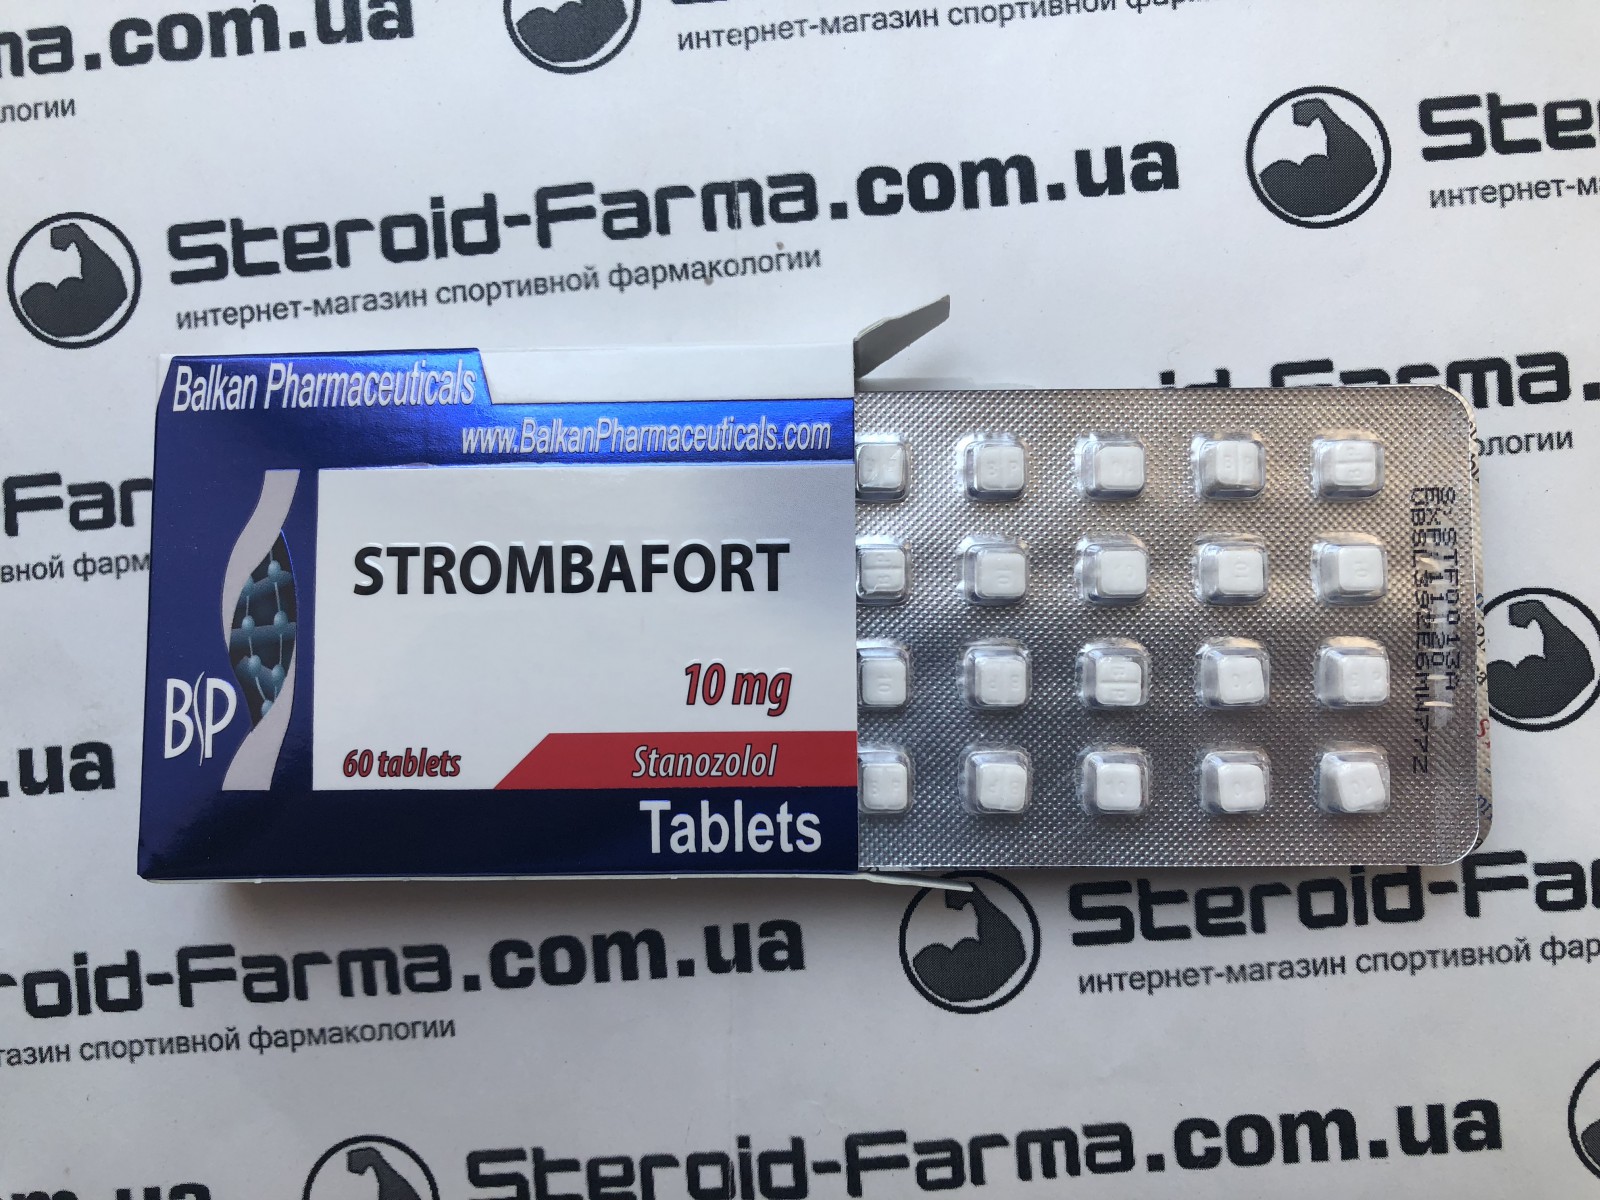 Станозолол — механизм действия, как принимать и дозировки для мужчин и женщин, противопоказания и отзывы